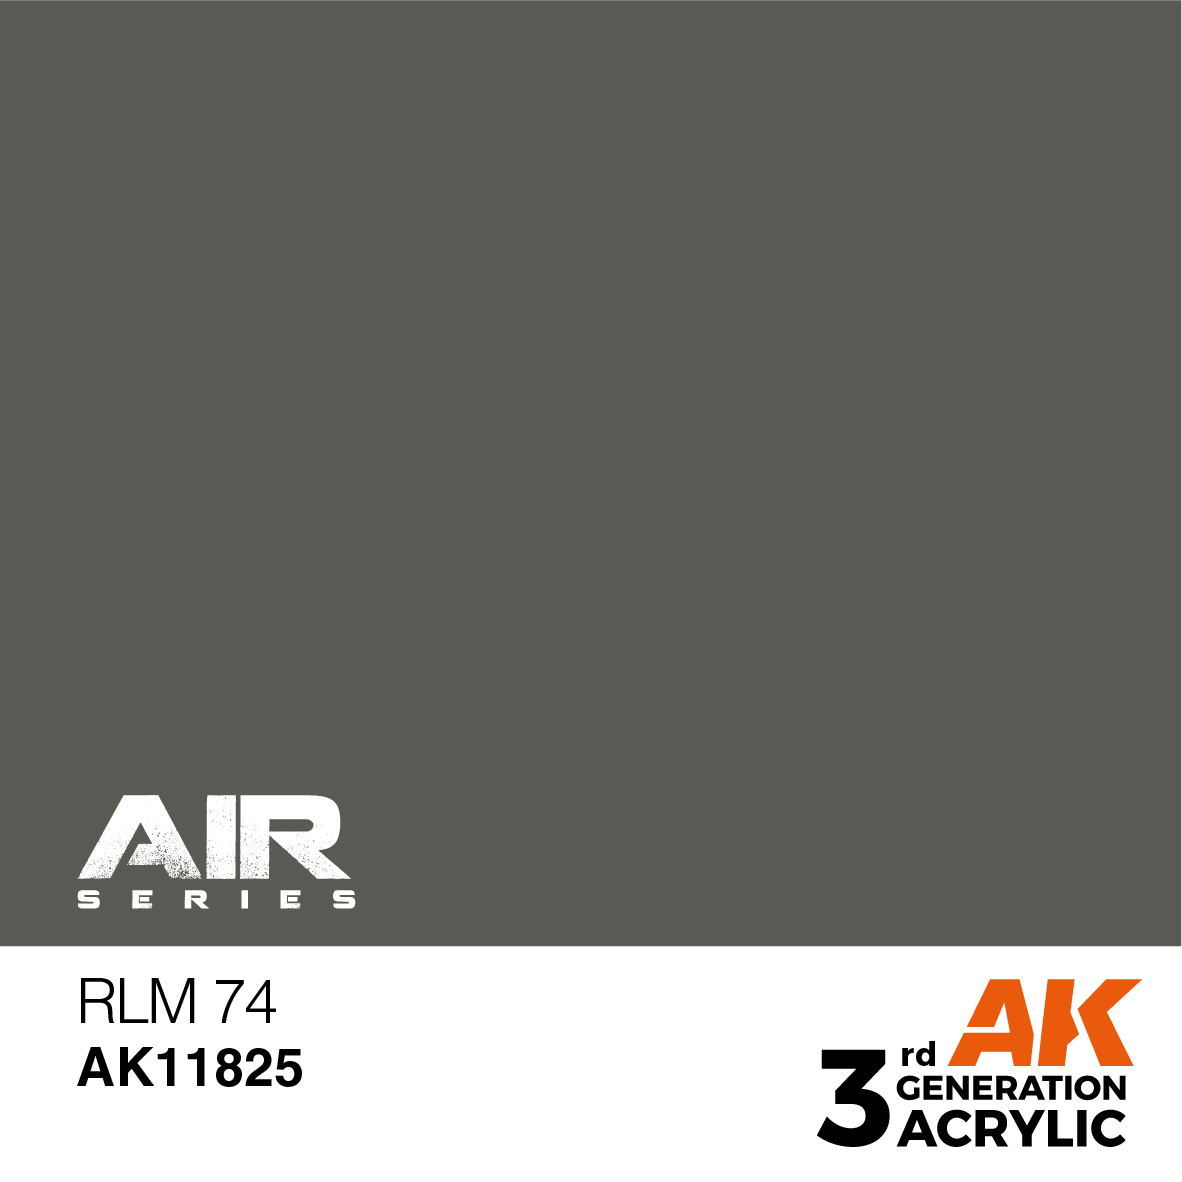 RLM 74 – AIR